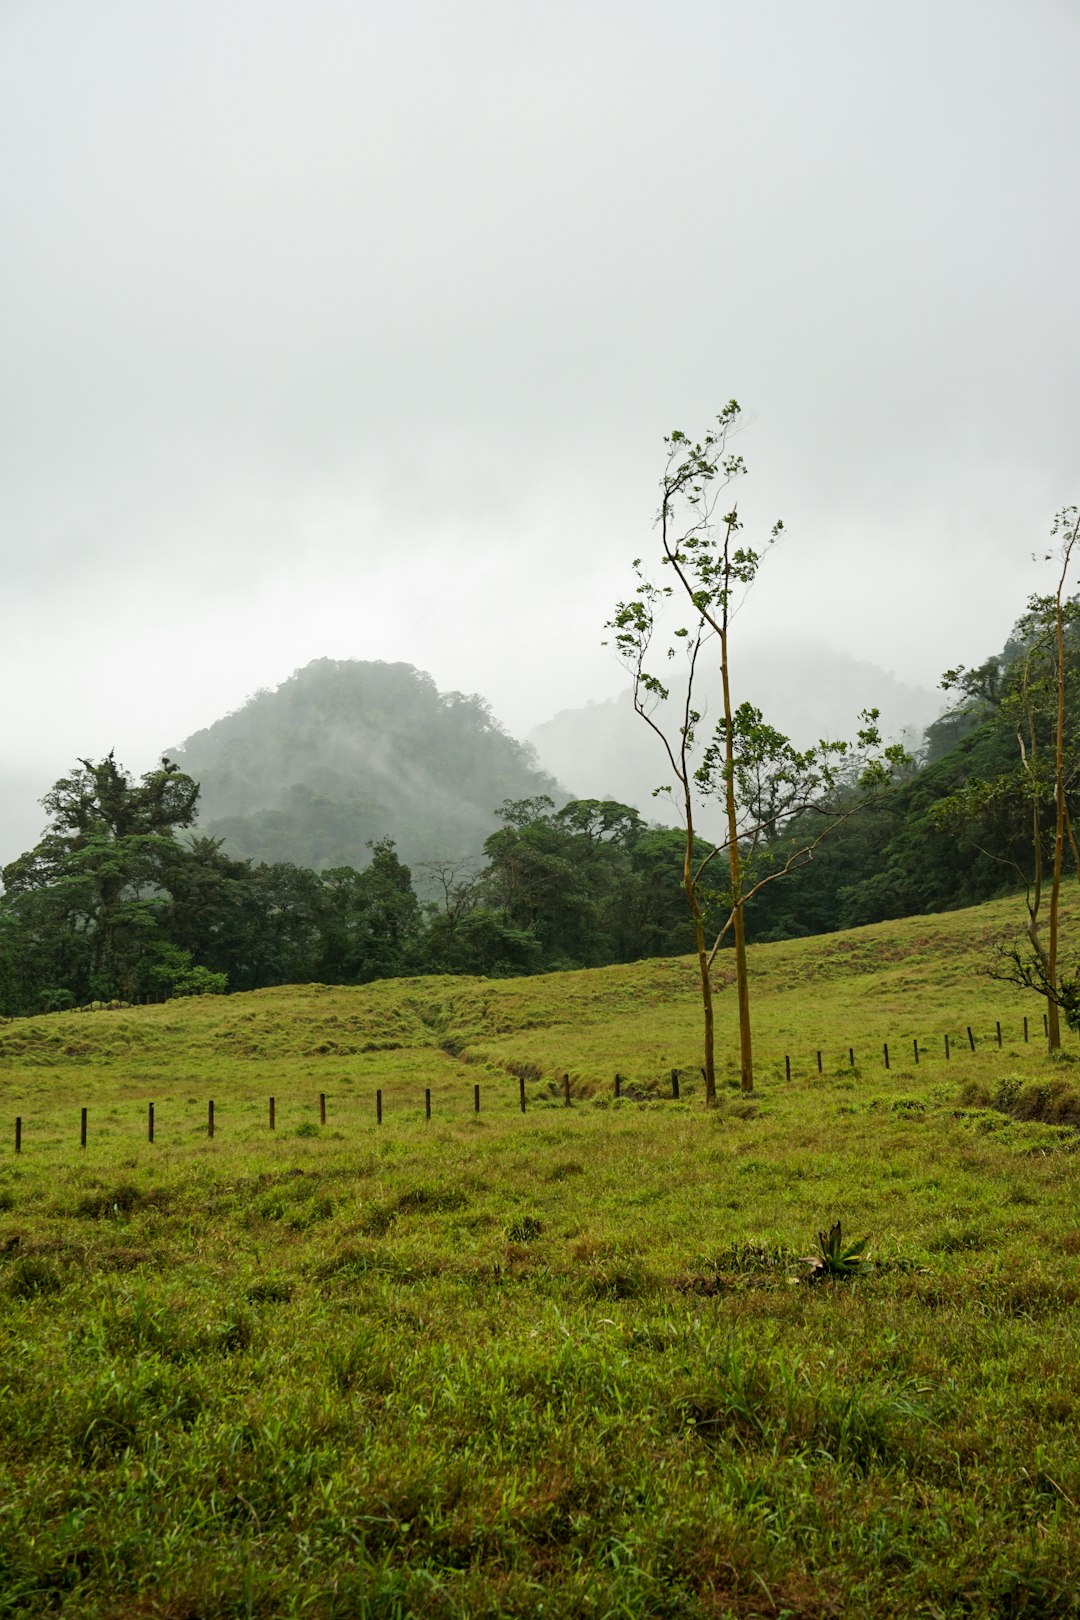 Hill station photo spot Provinz Alajuela Guanacaste Province